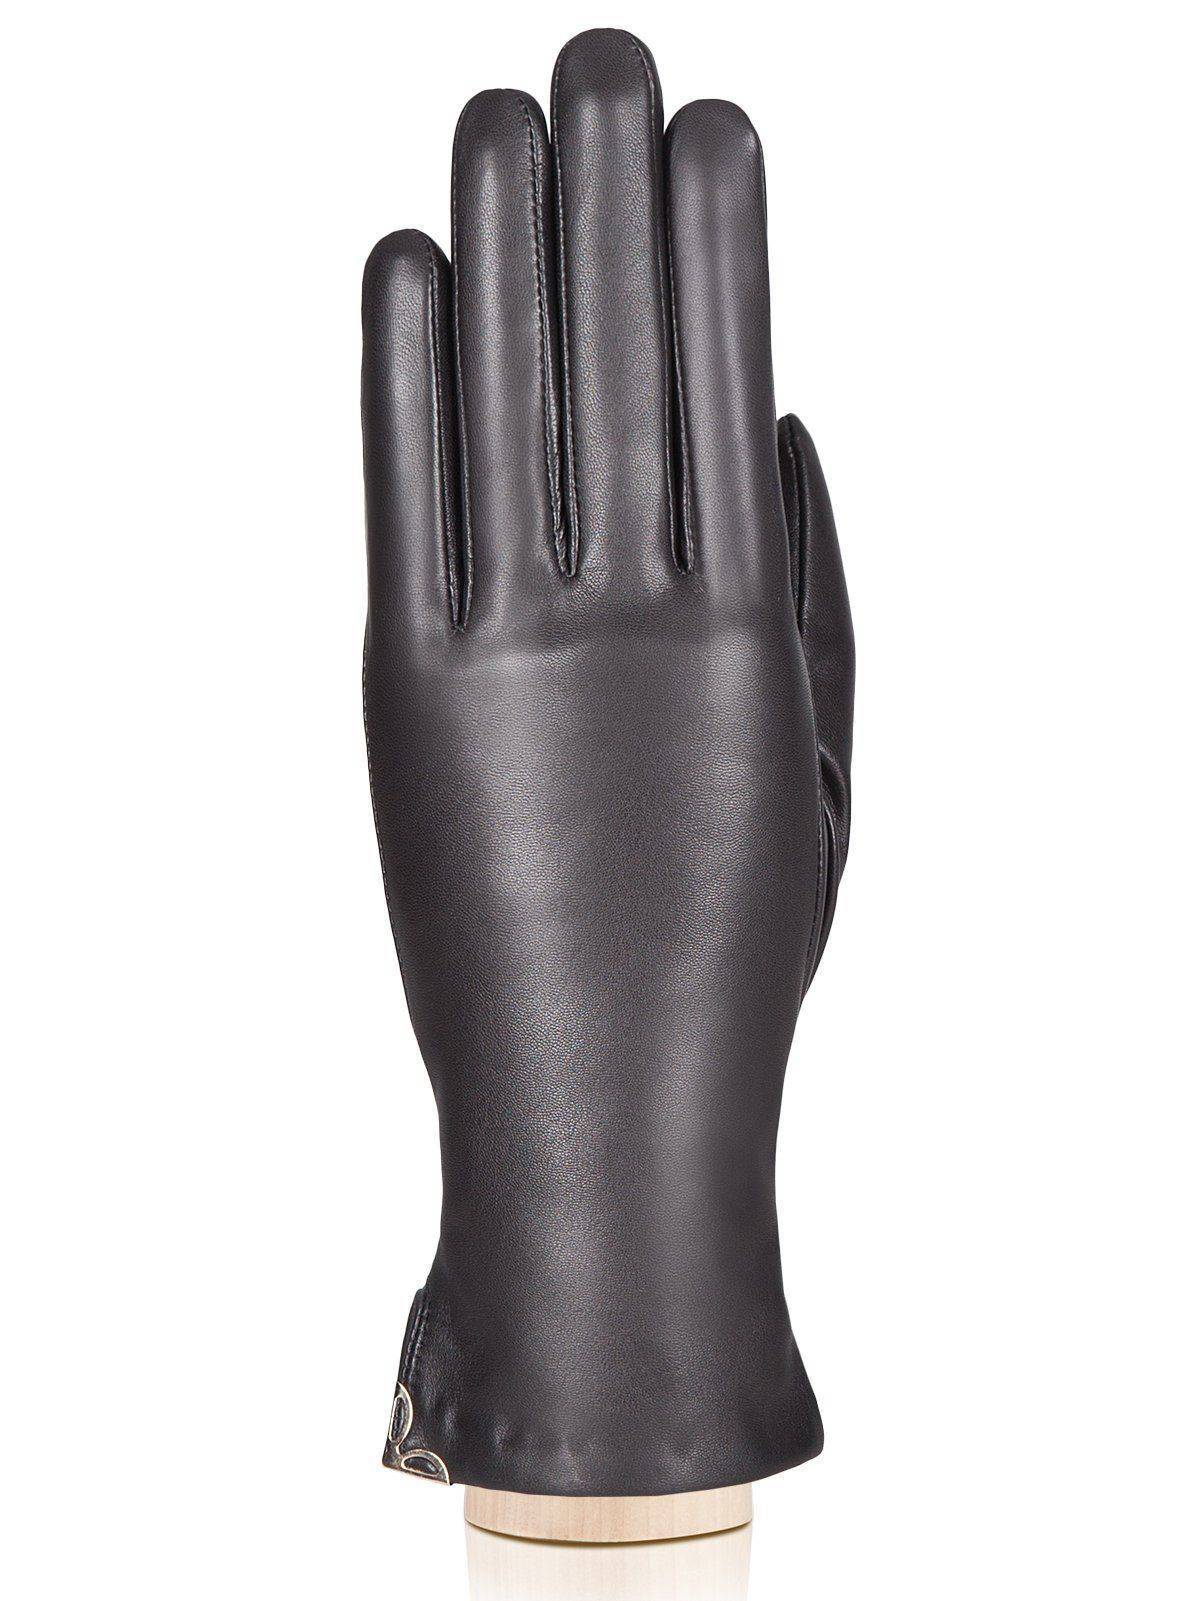 Перчатки ELEGANZZA IS953, цвет черный, размер 6.5